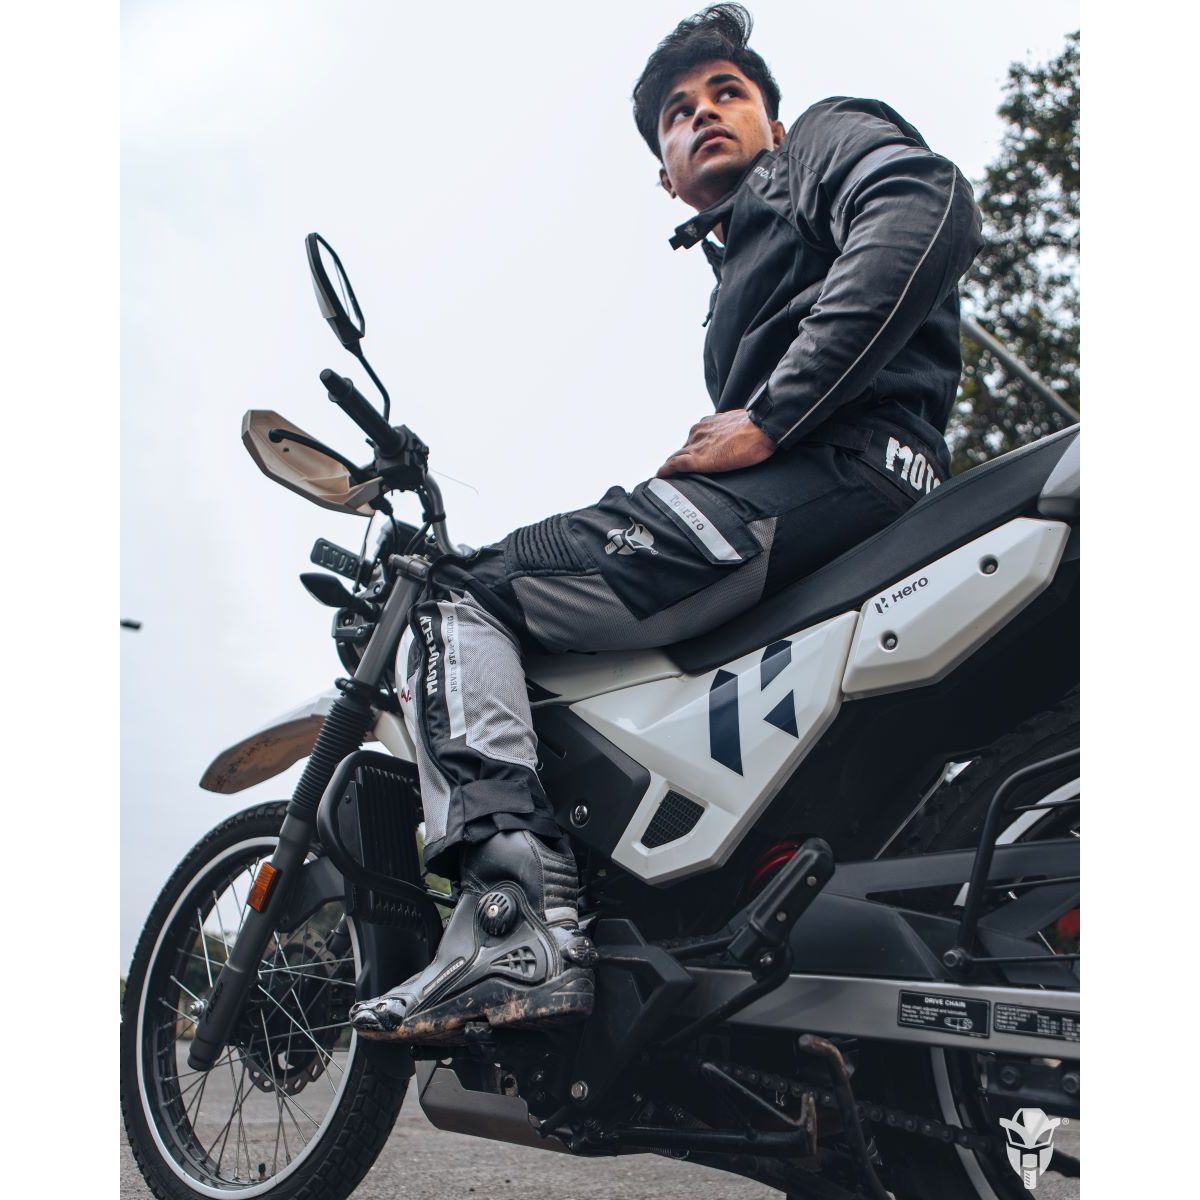 Aero TourPro Mesh Motorcycle Riding Pant - Level 2